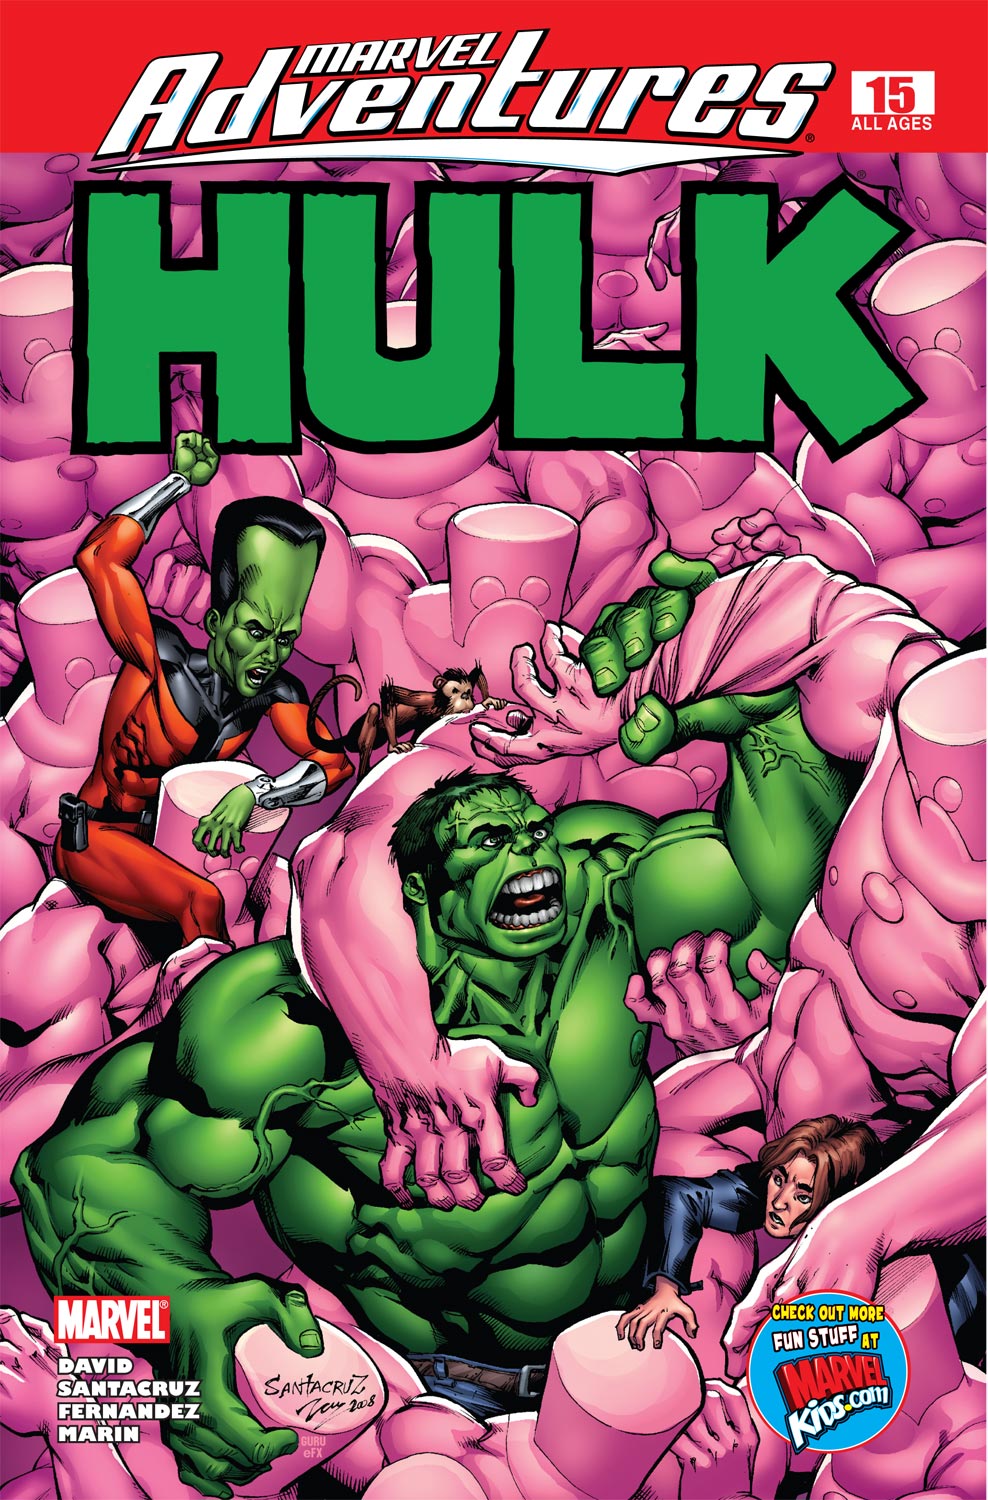 Marvel Adventures Hulk (2007) #15